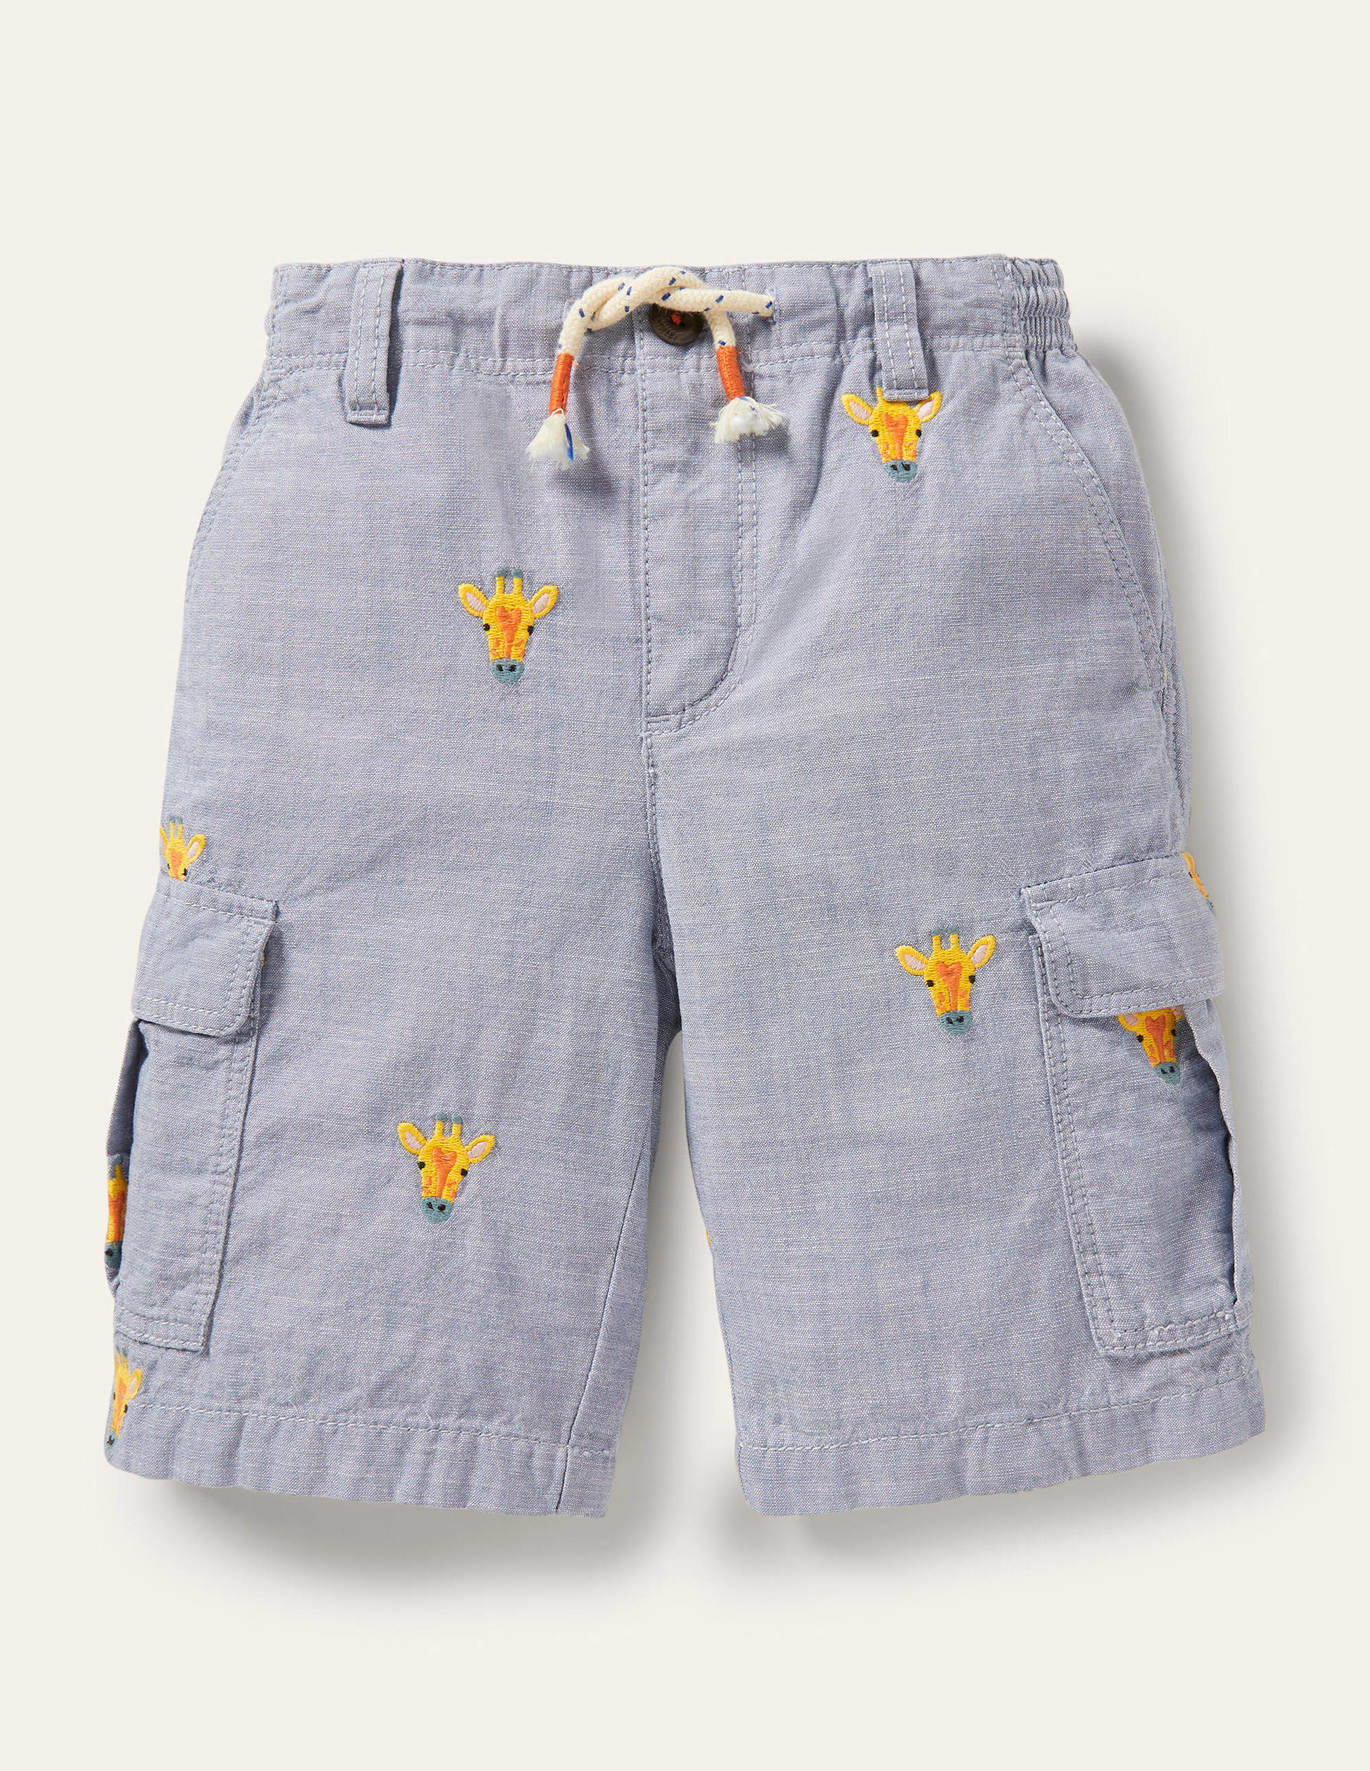 Boden Cargo Shorts - Chambray Giraffe Embroidery